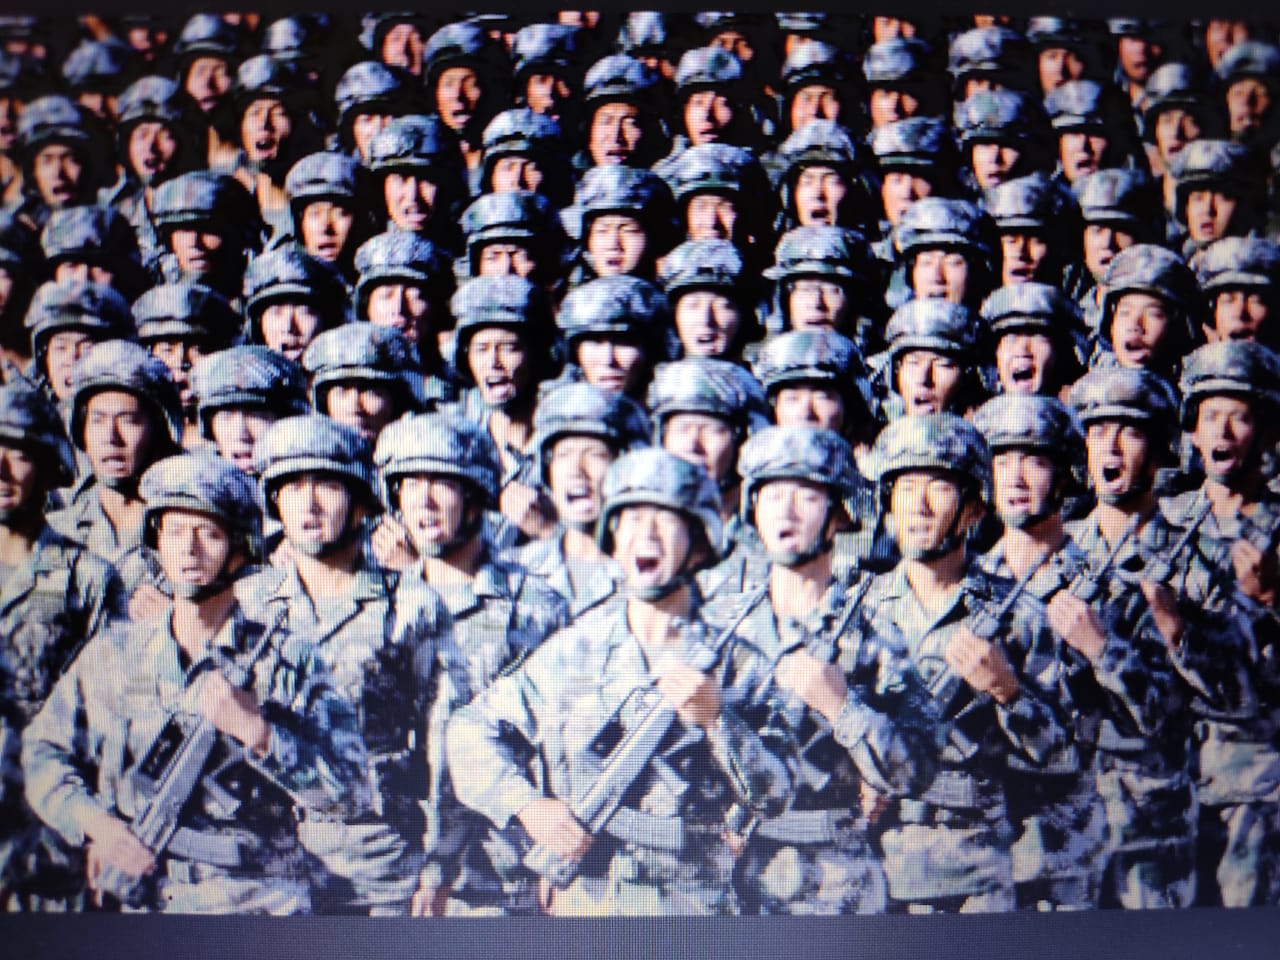 चीन का रक्षा बजट 200 अरब डालर पहुंचा, भारत के मुकाबले तीगुणा